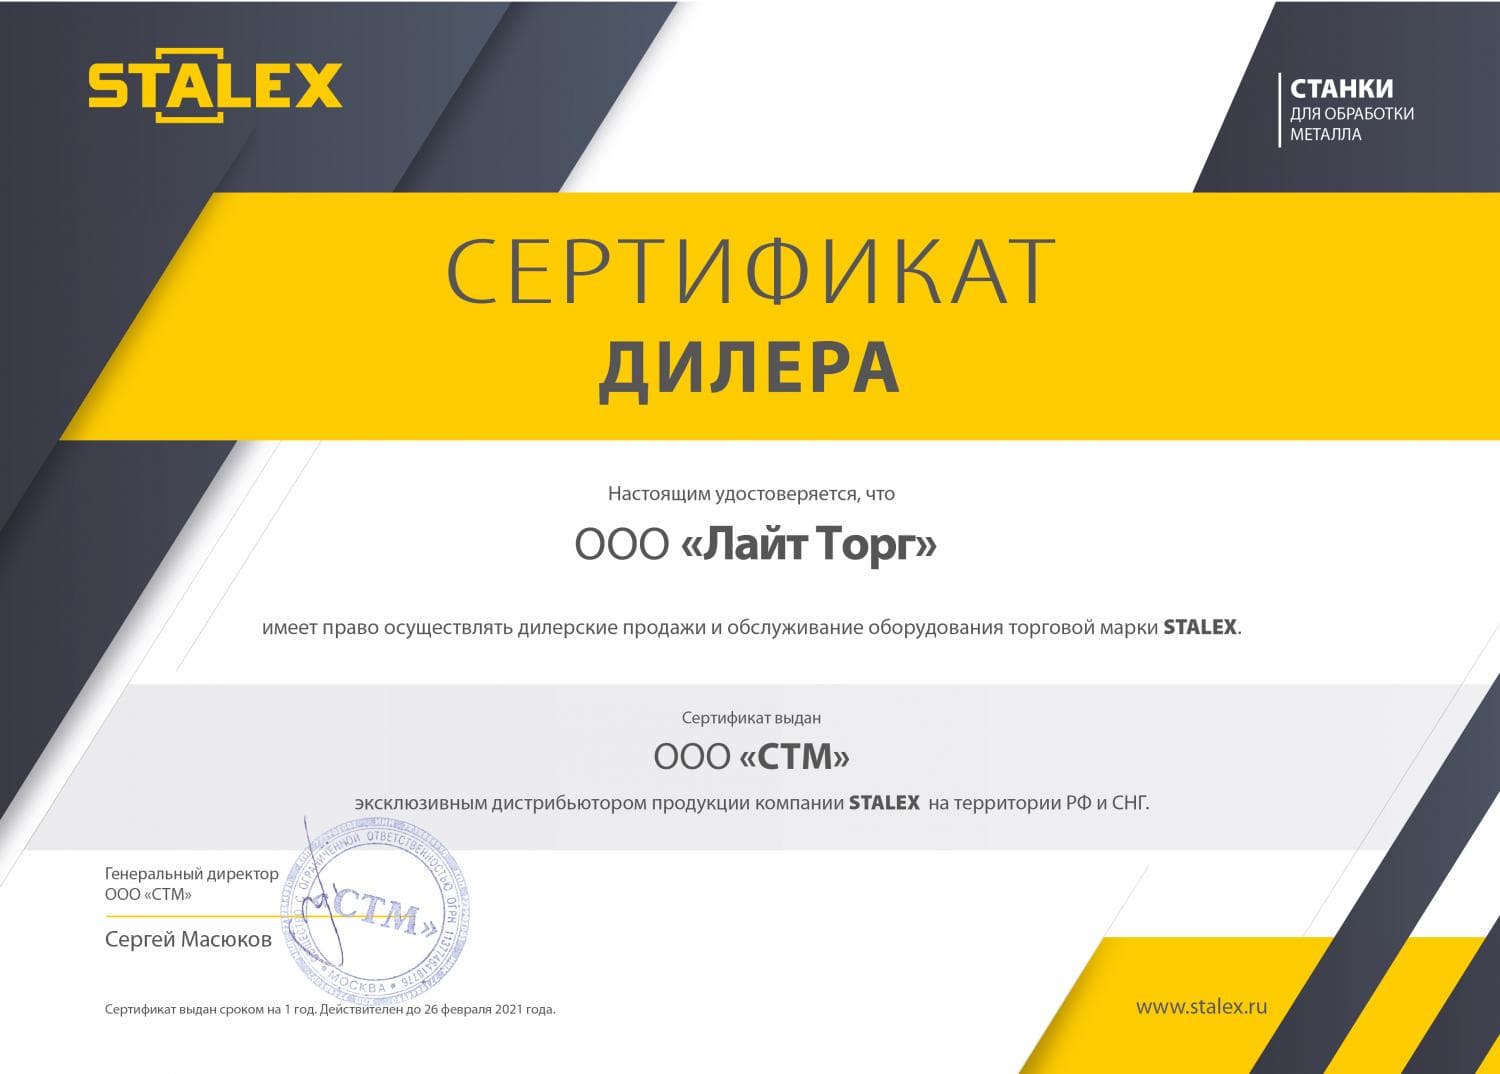 Сертификат дилера STALEX